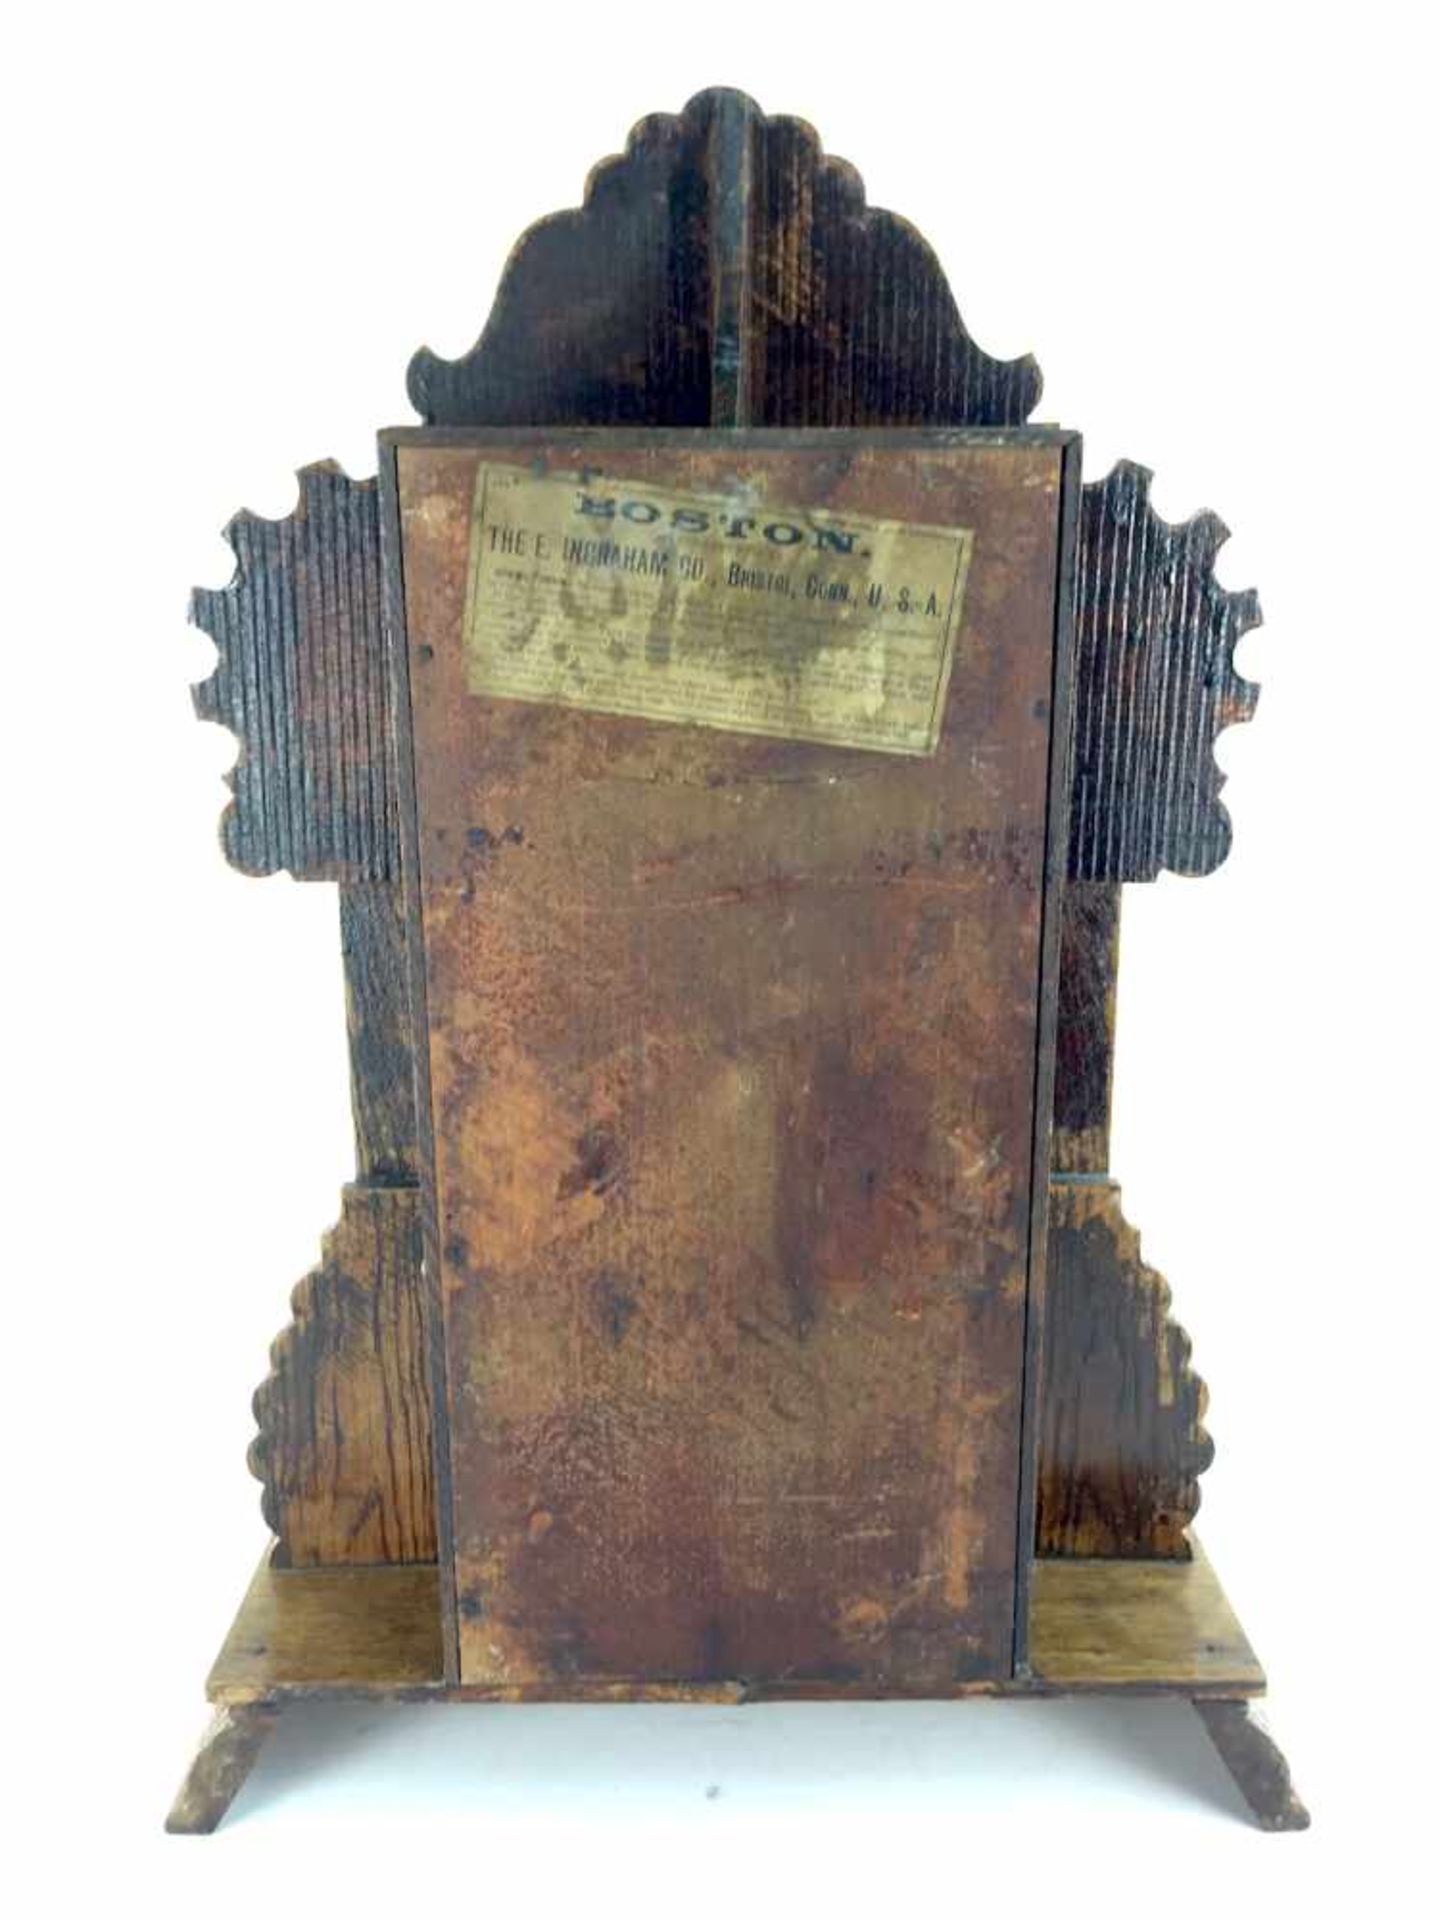 Portal-Uhr / Aufsatzuhr: Holzgehäuse, Boston manufactured by The E. Ingraham Co., um 1900, sehr - Bild 3 aus 3